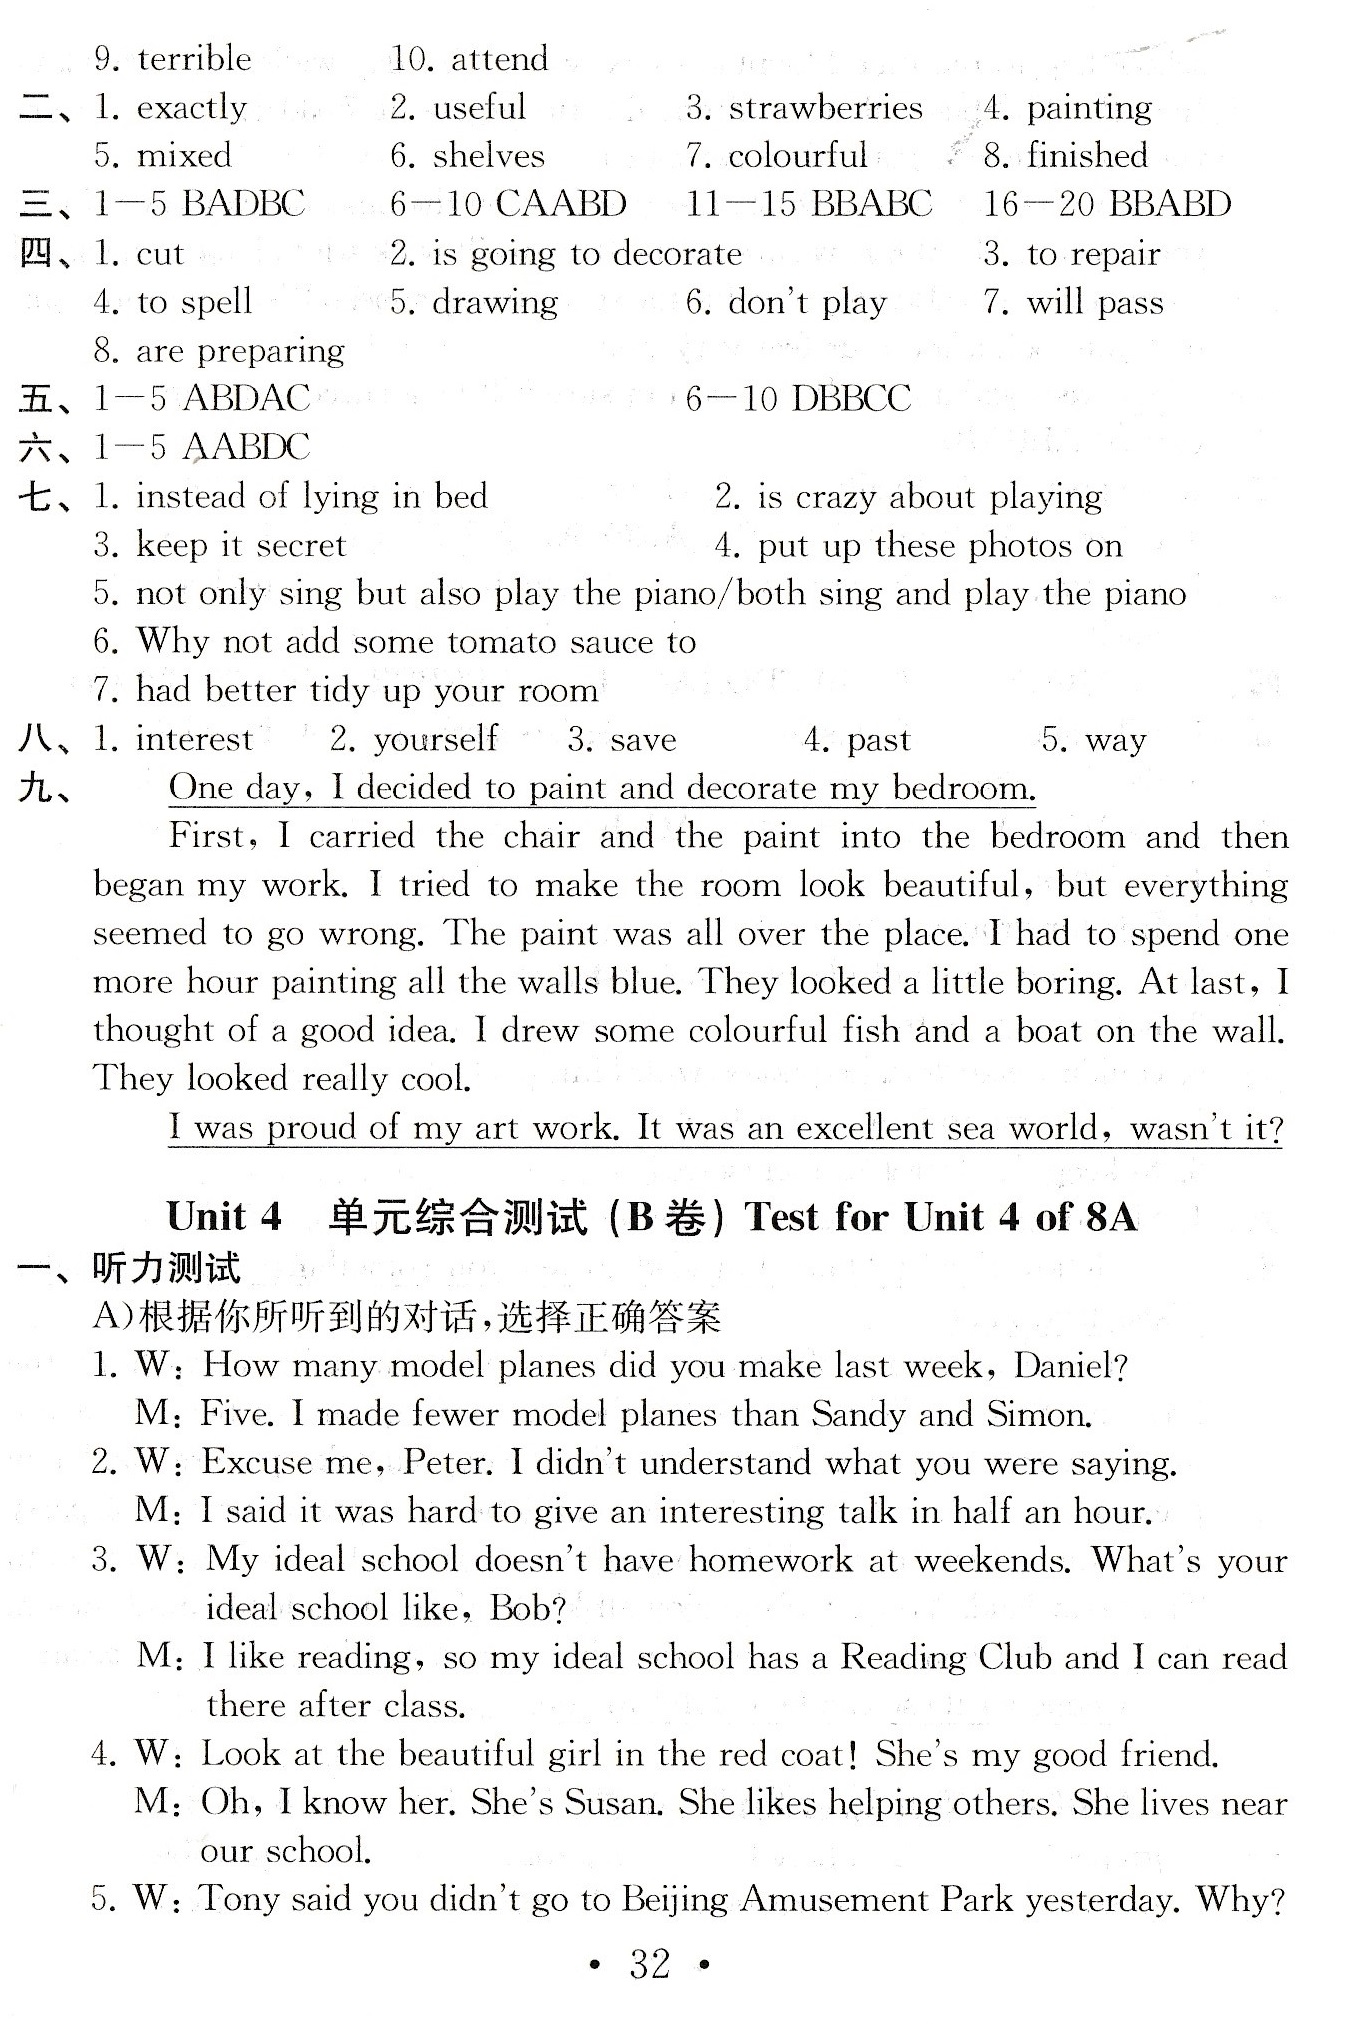 单元综合测试（B卷）Test for Unit 4 of 8A - 第31页